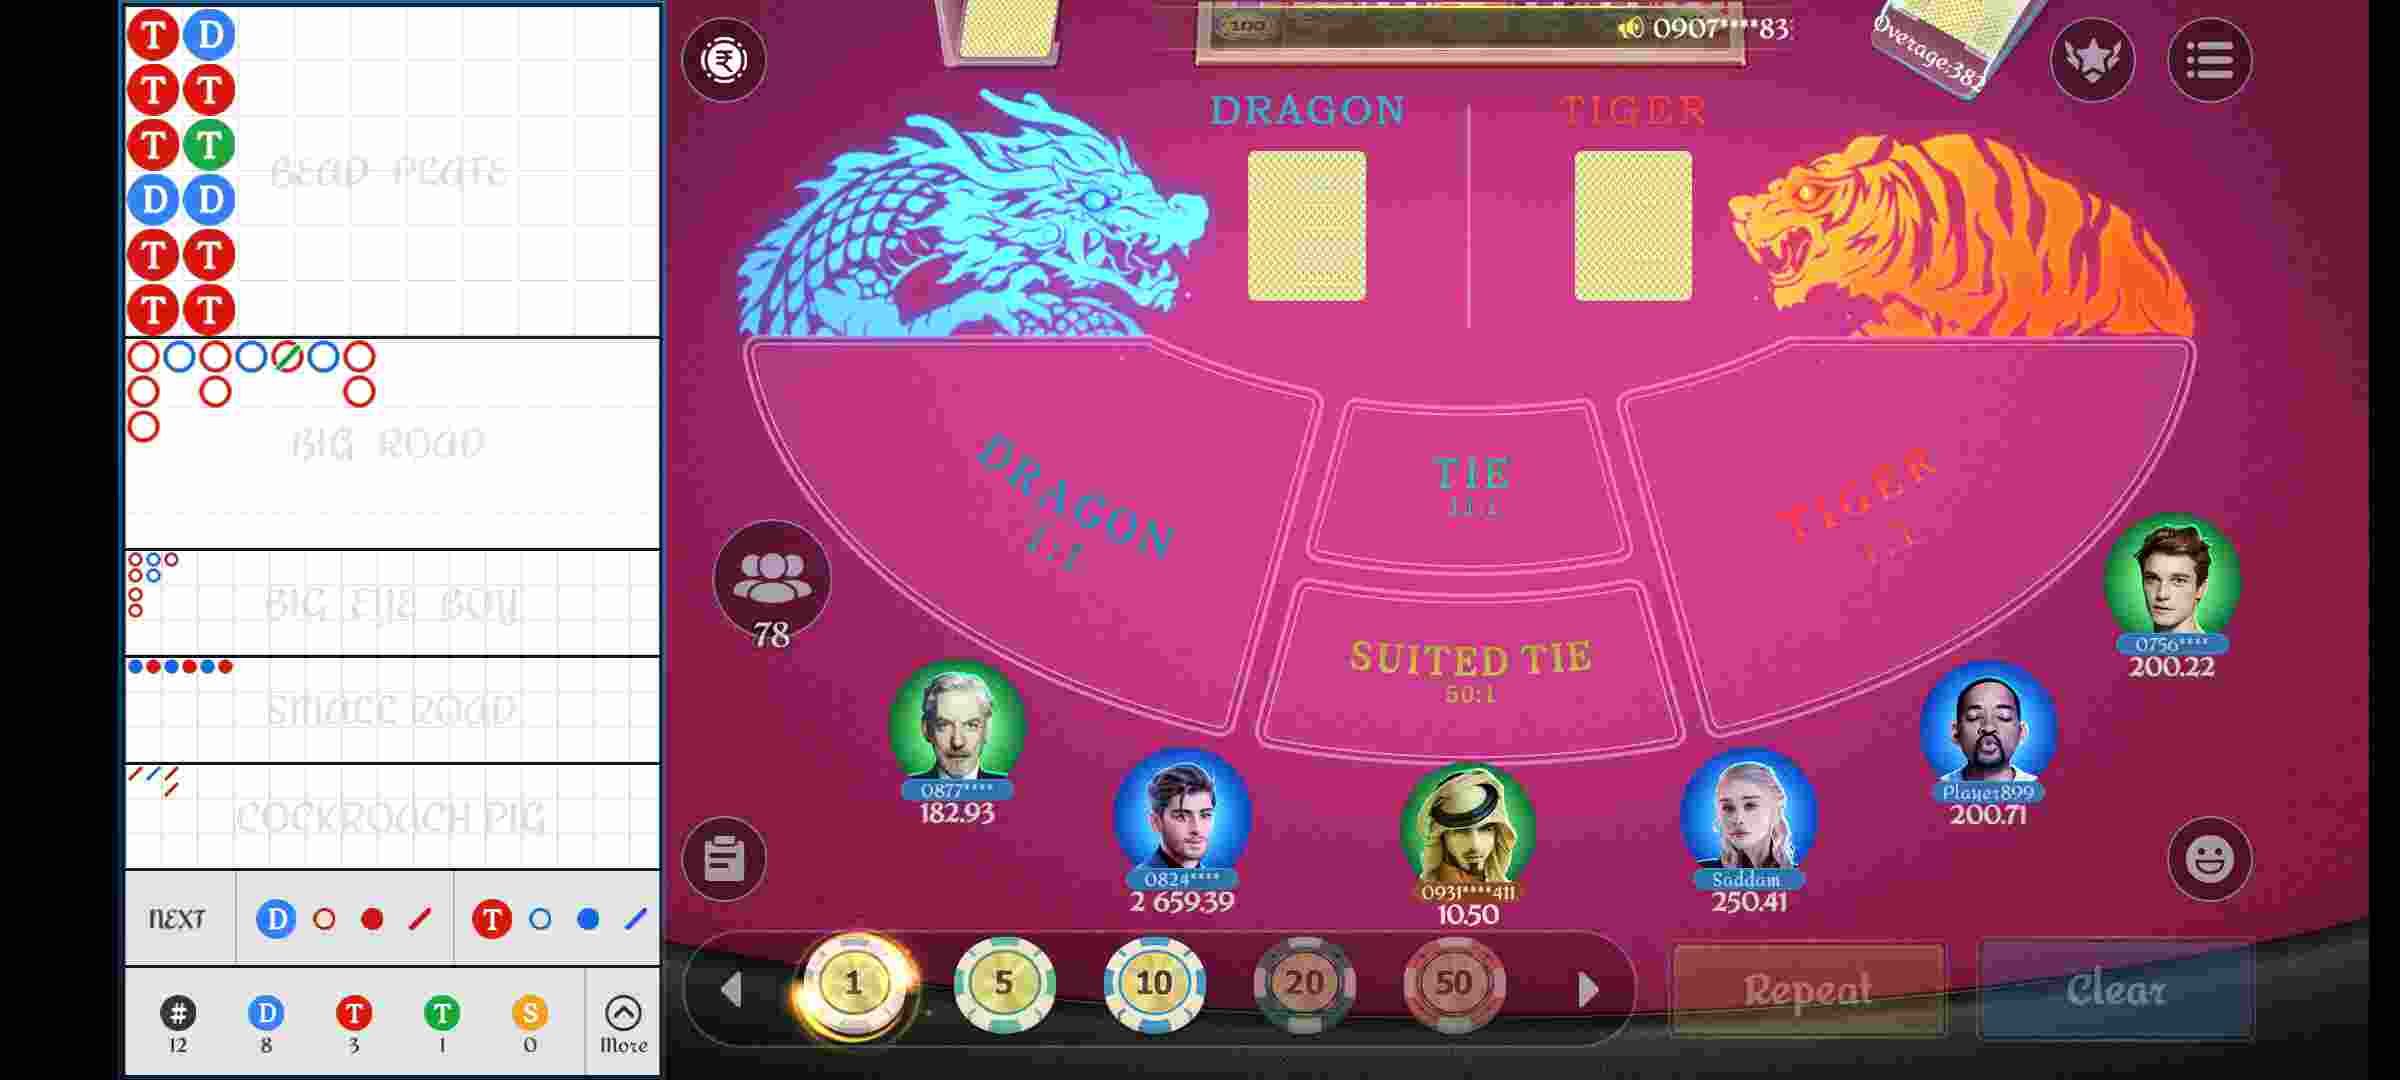 Download Osom Casino Apk Easily | Get 41 RS Signup Bonus